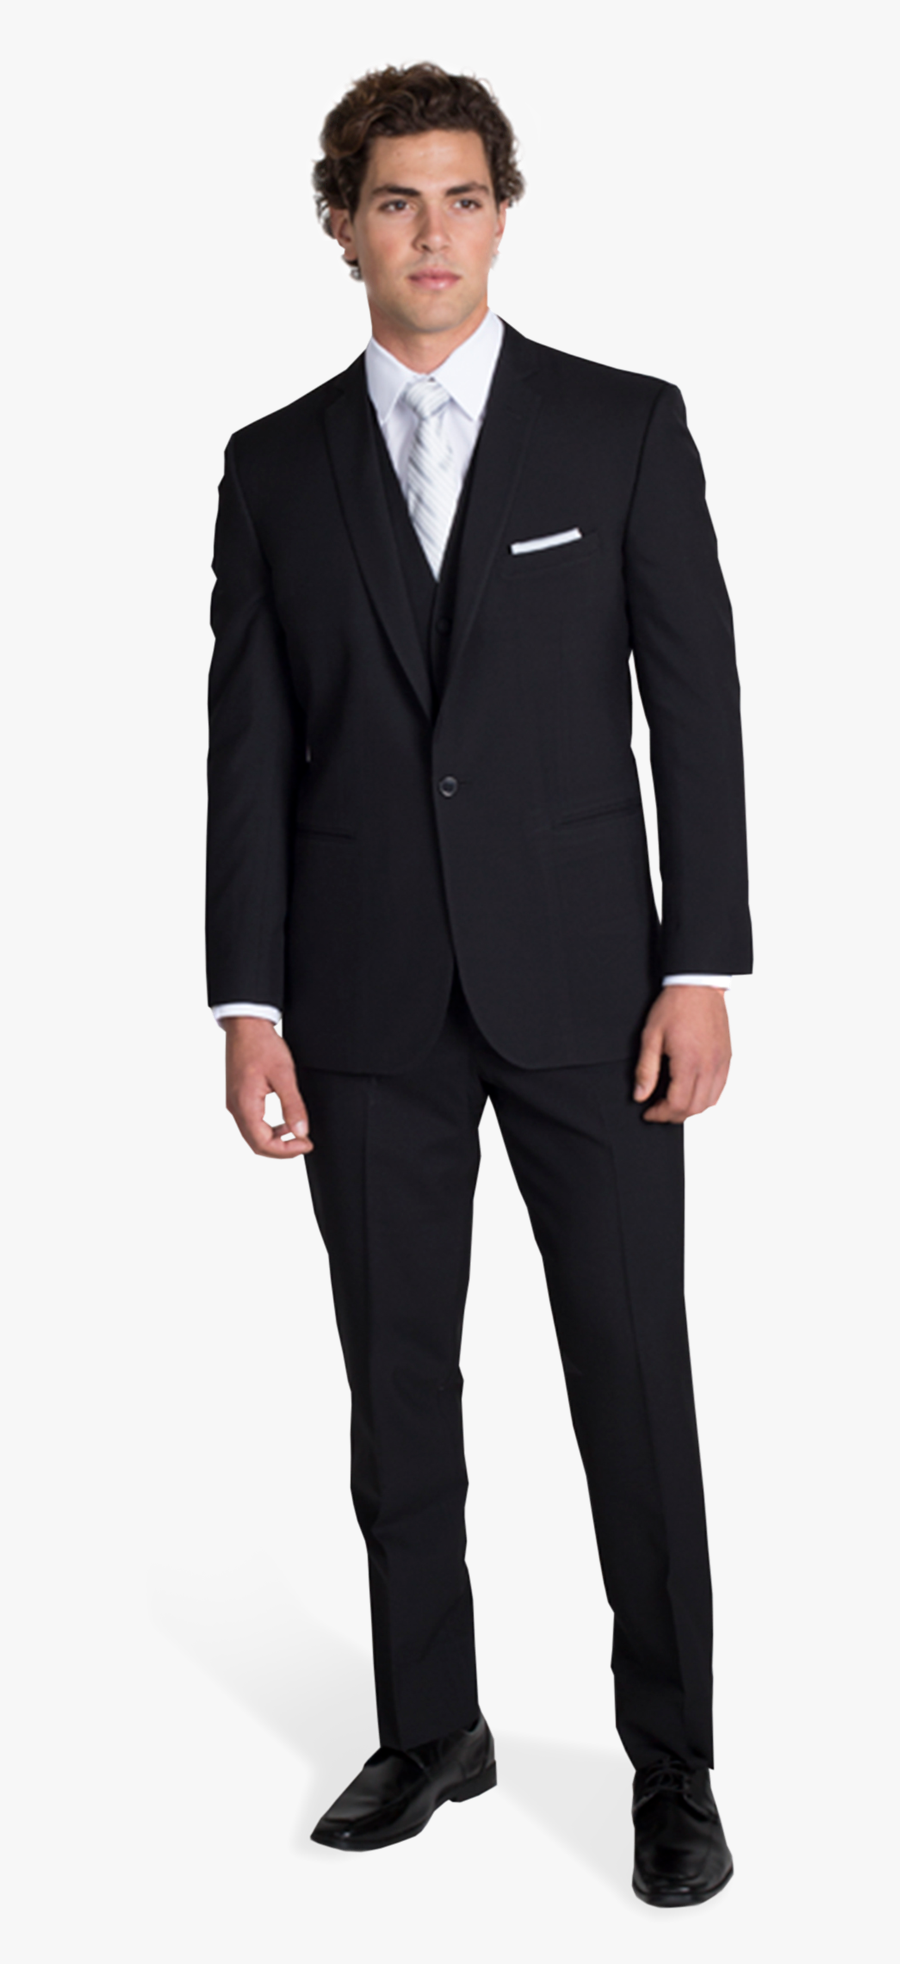 Suit,clothing,formal - Suit Man 3d Model Free, Transparent Clipart